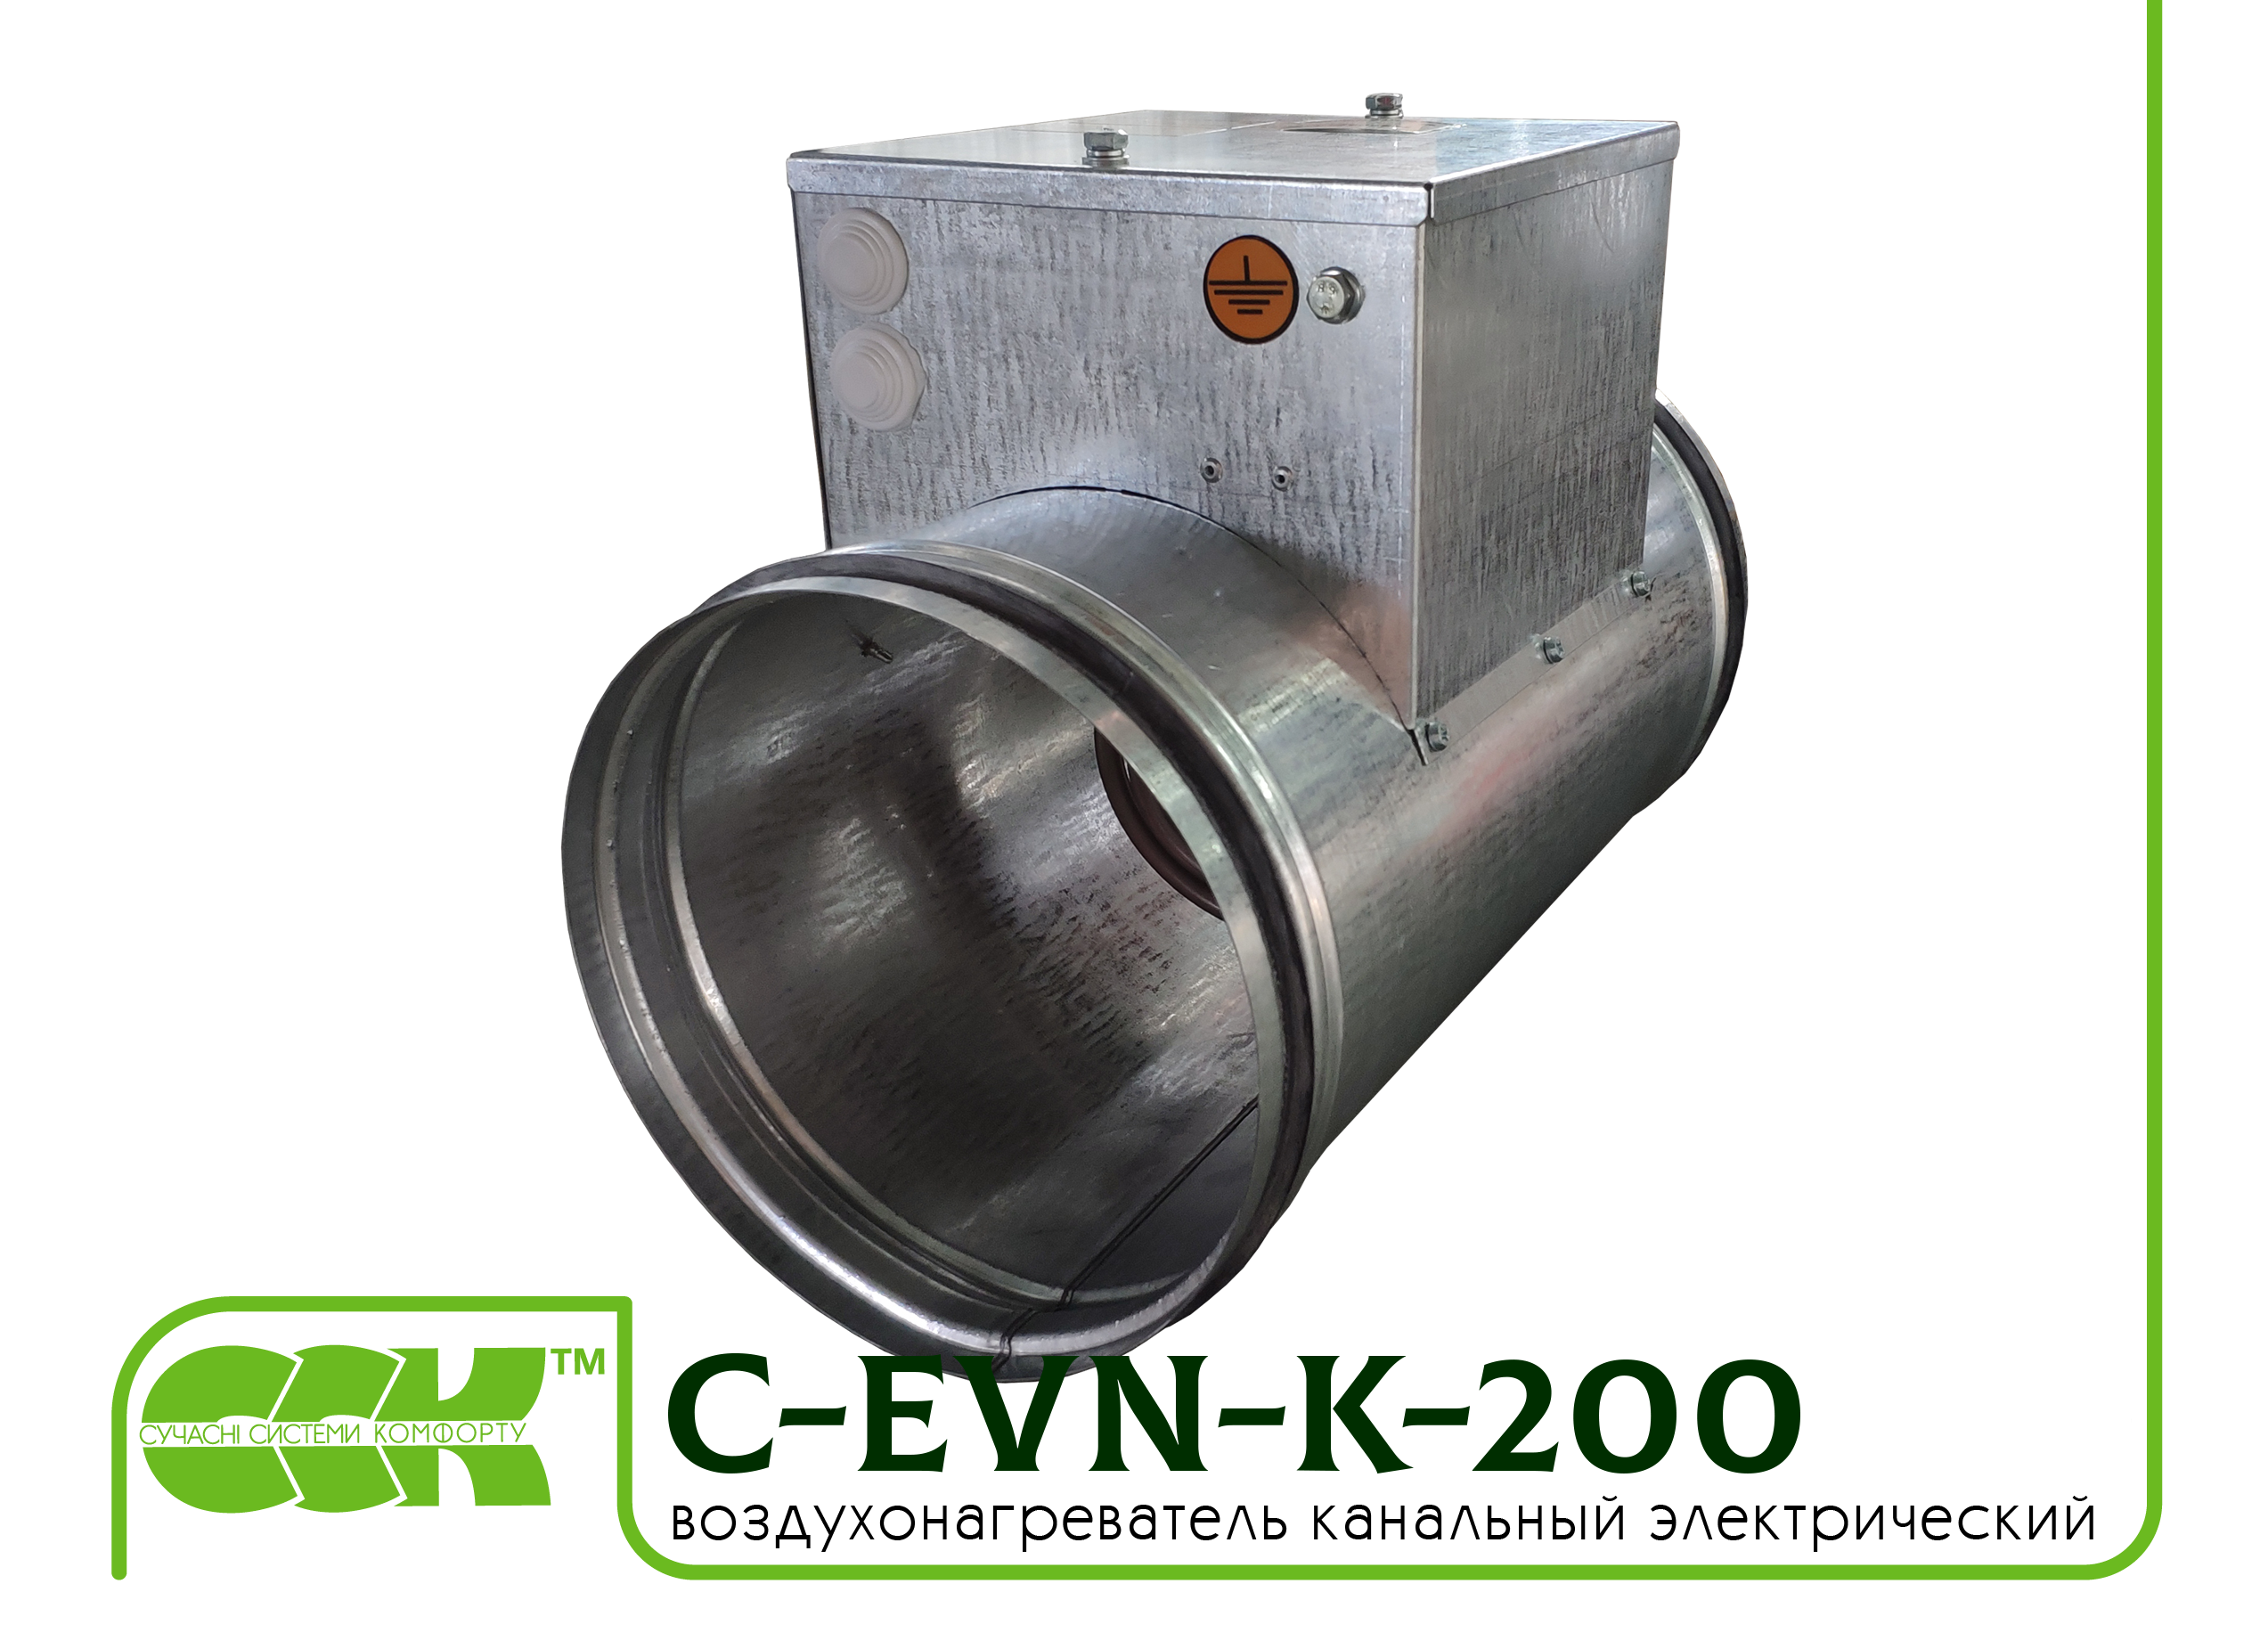 Воздухонагреватель электрический для круглых каналов C-EVN-K-200-6,0